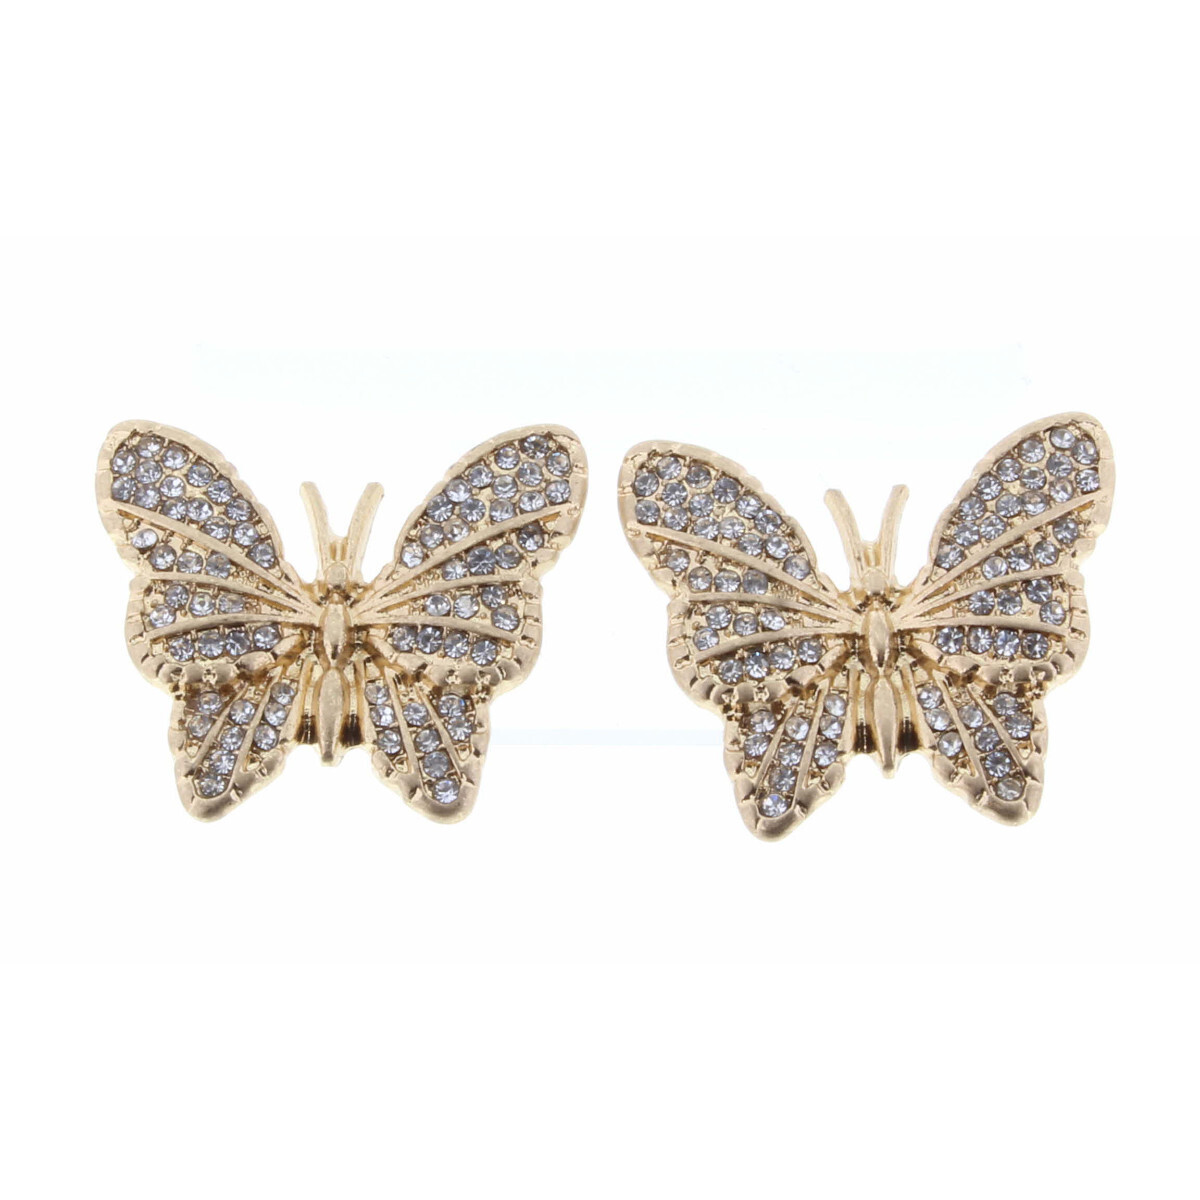 Earrings "Butterfly Kisses" Rhinestone